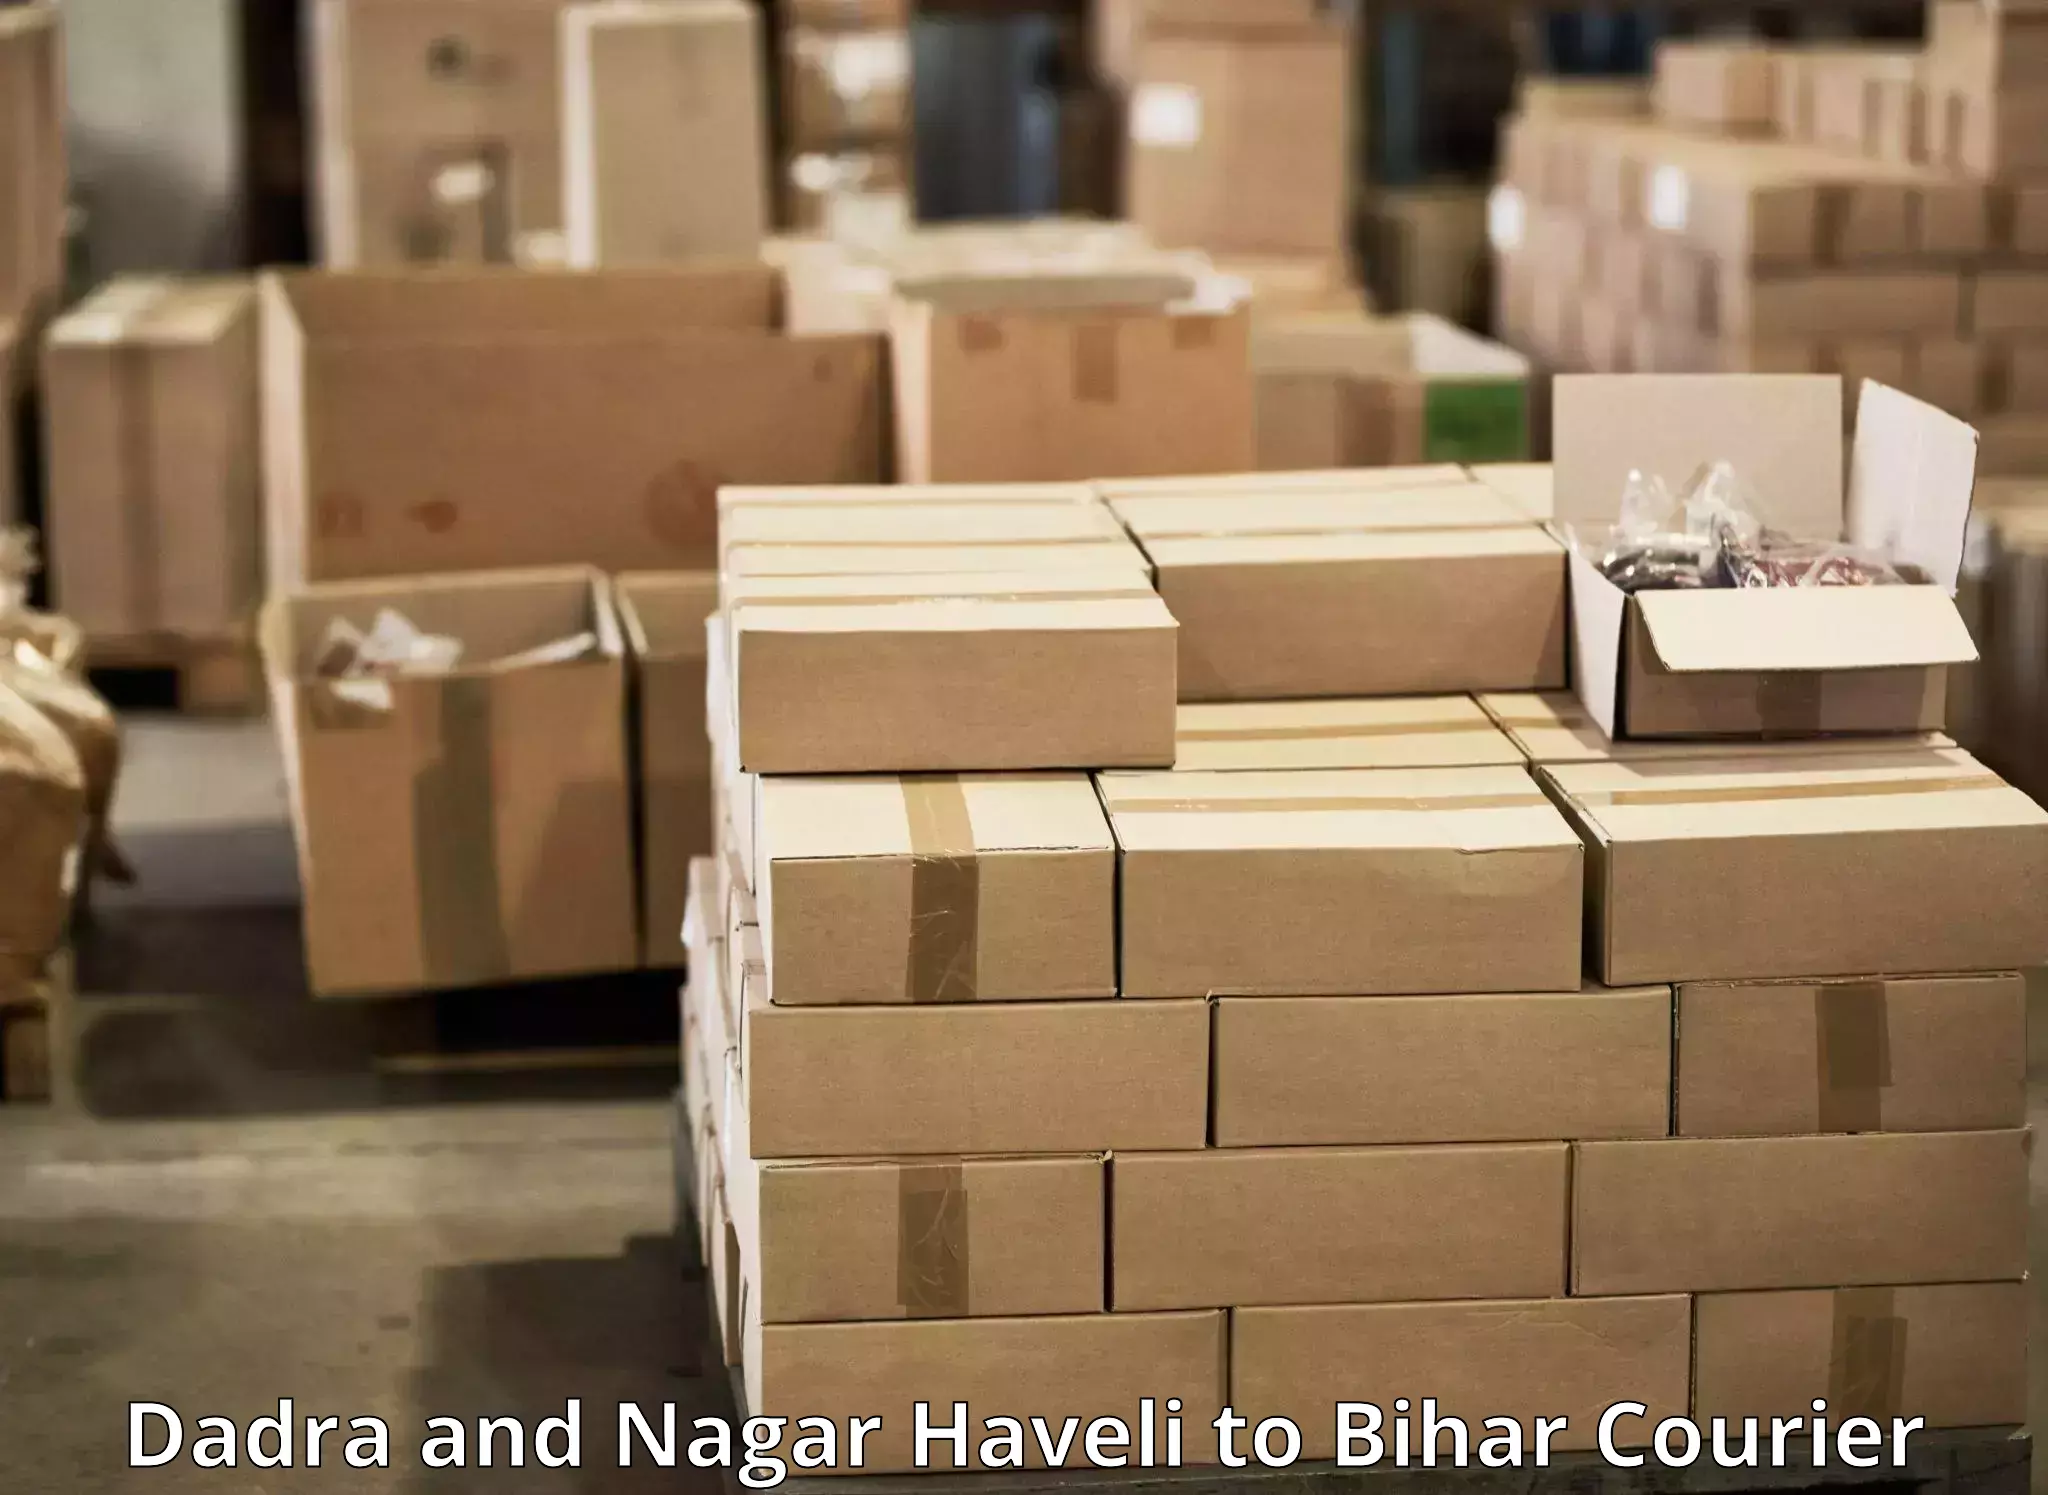 User-friendly courier app Dadra and Nagar Haveli to Muzaffarpur